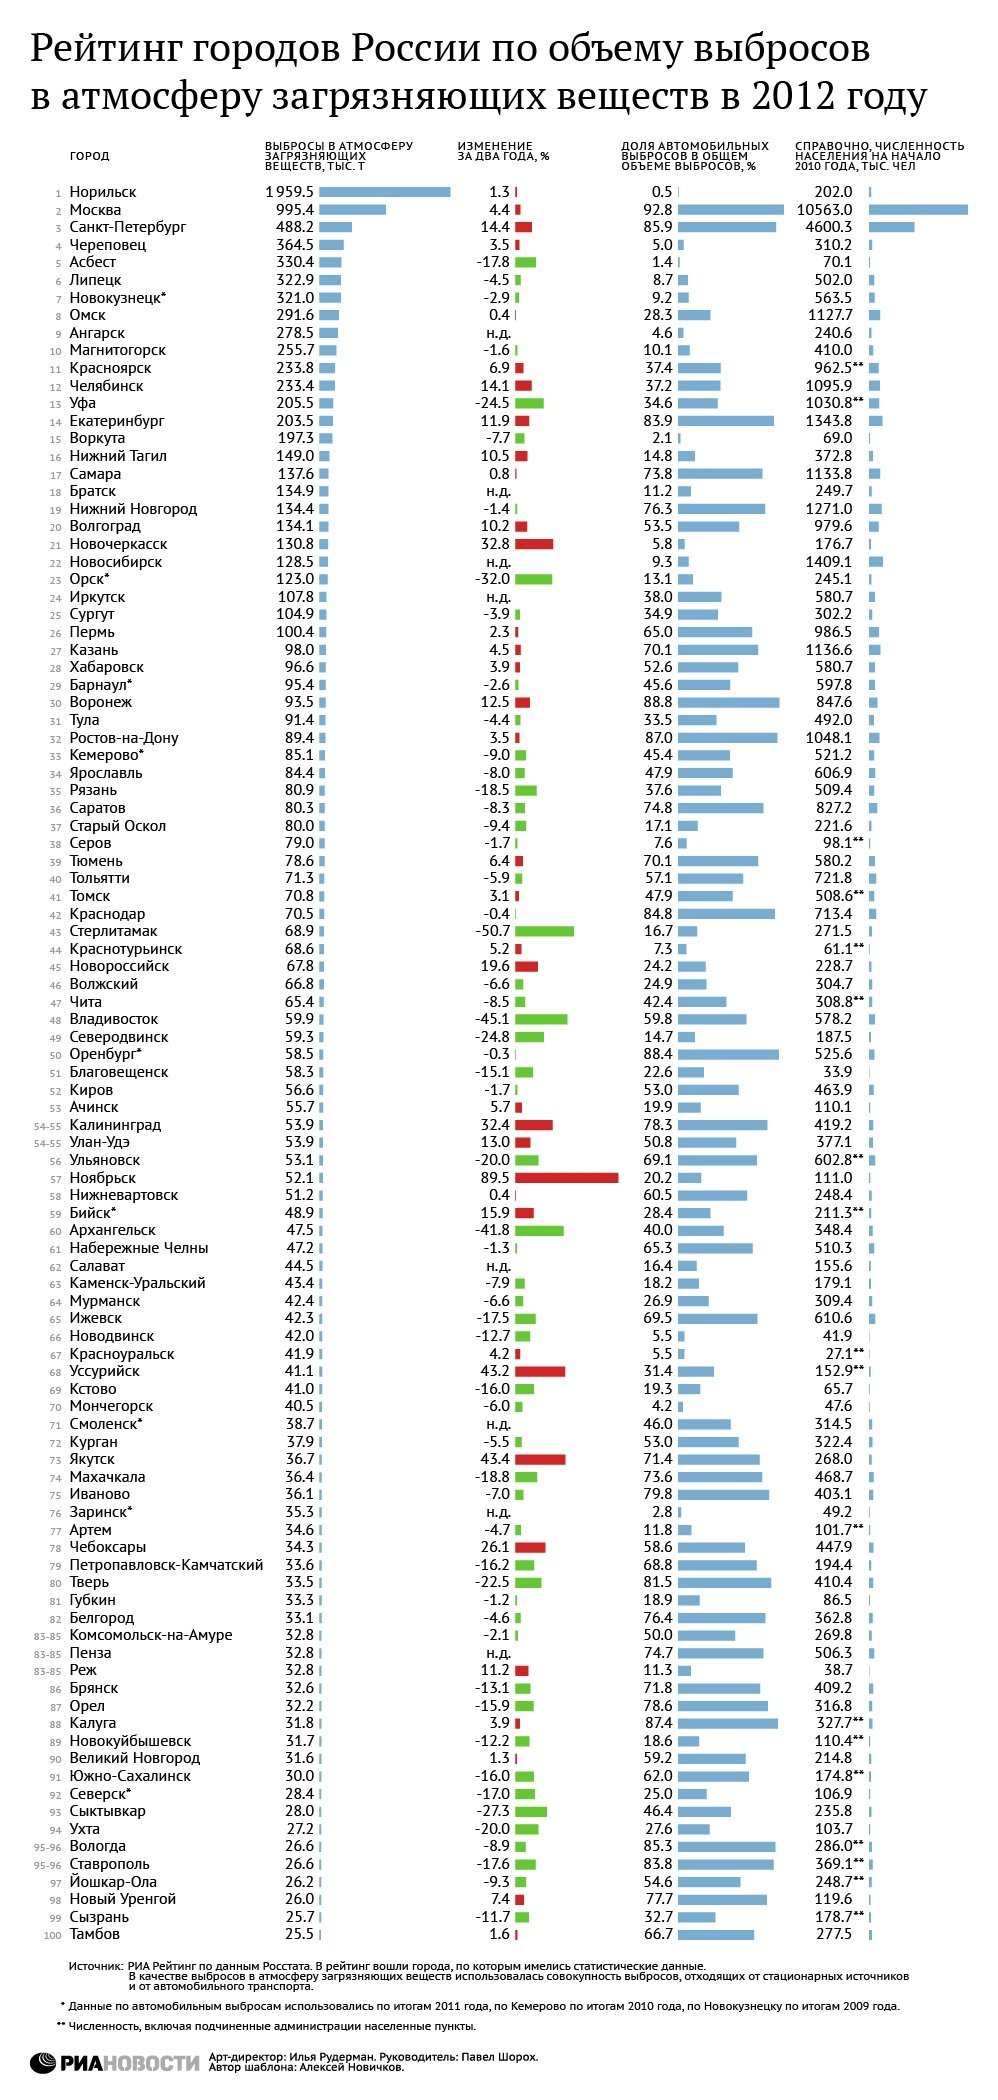 Рейтинг российских городов по загрязнению атмосферы в 2012 году